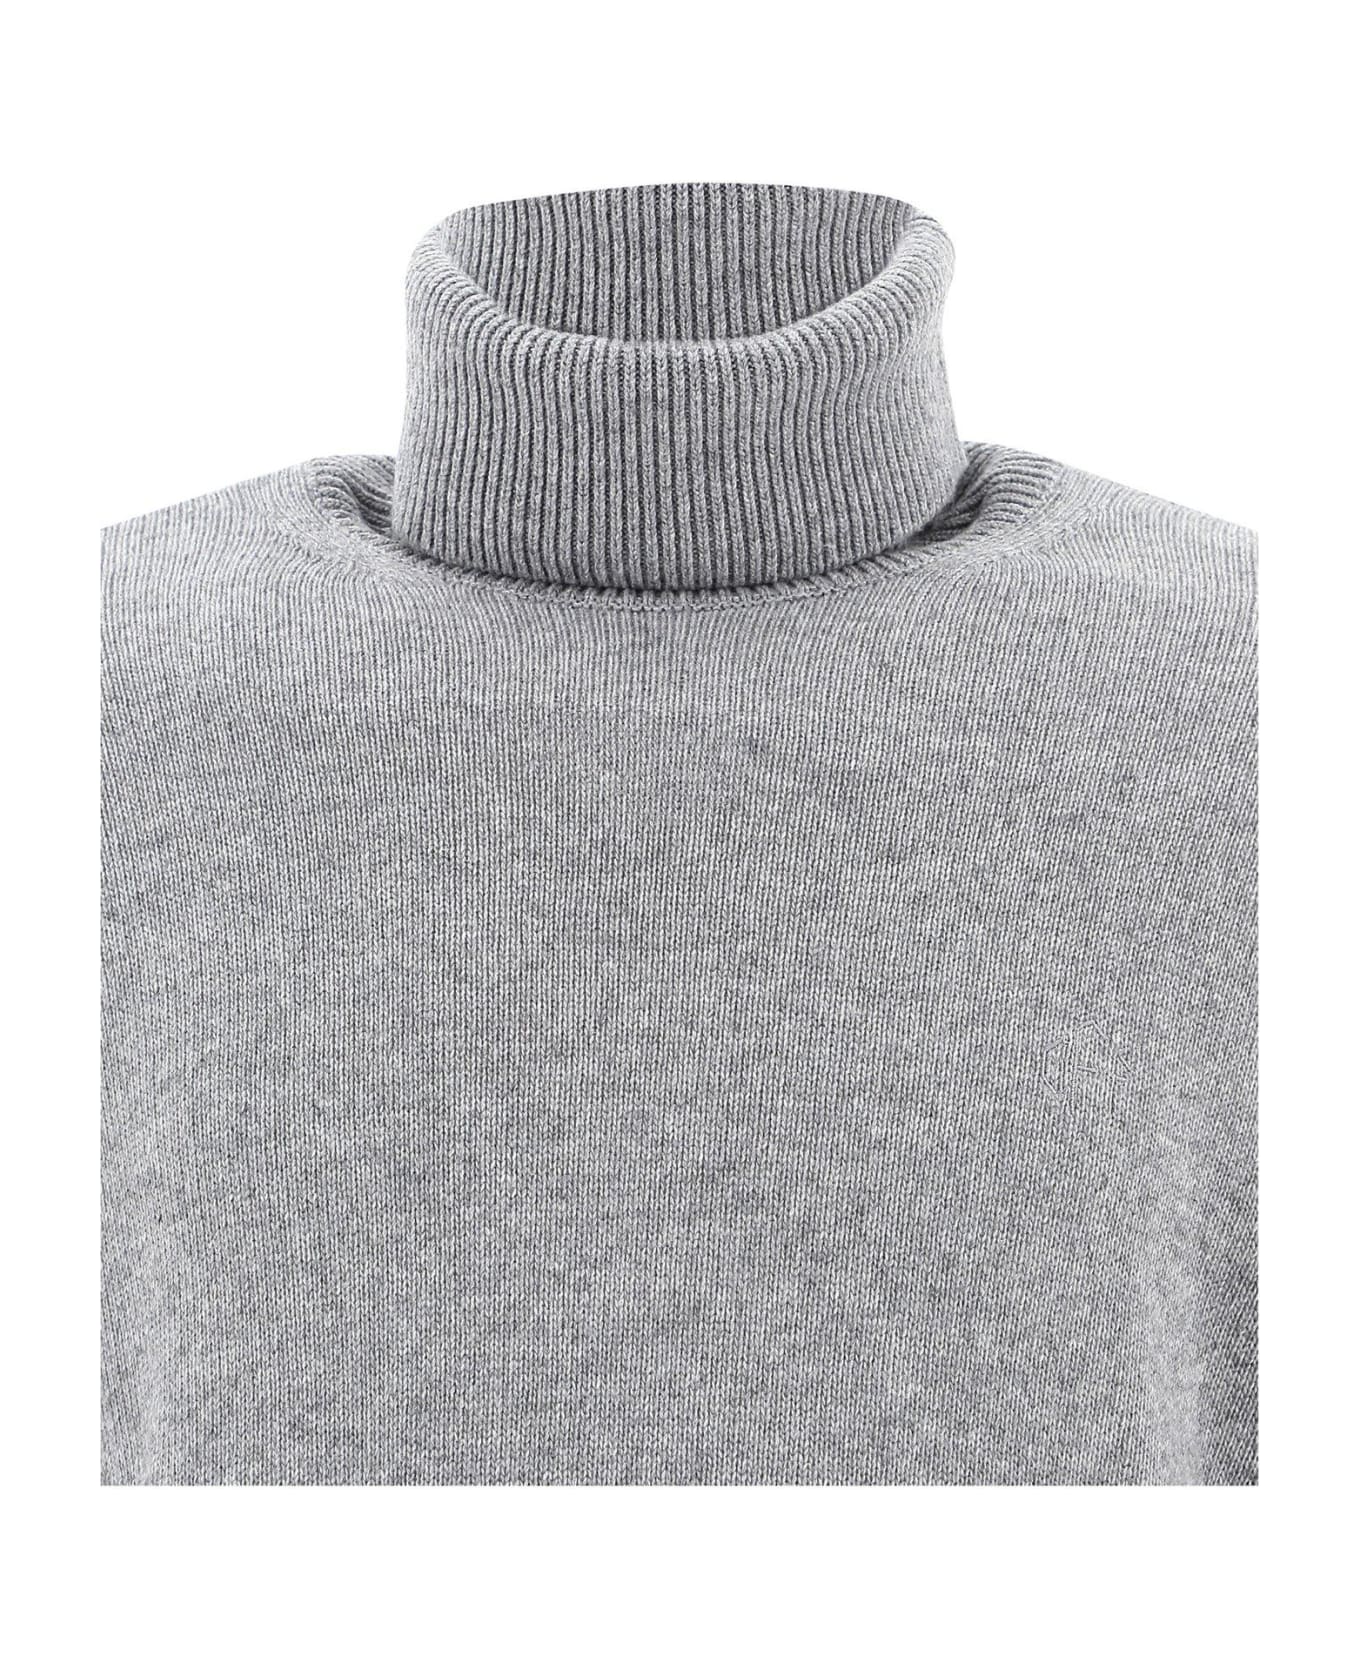 Off-White Fine Knit Turtleneck Jumper - Gray ニットウェア